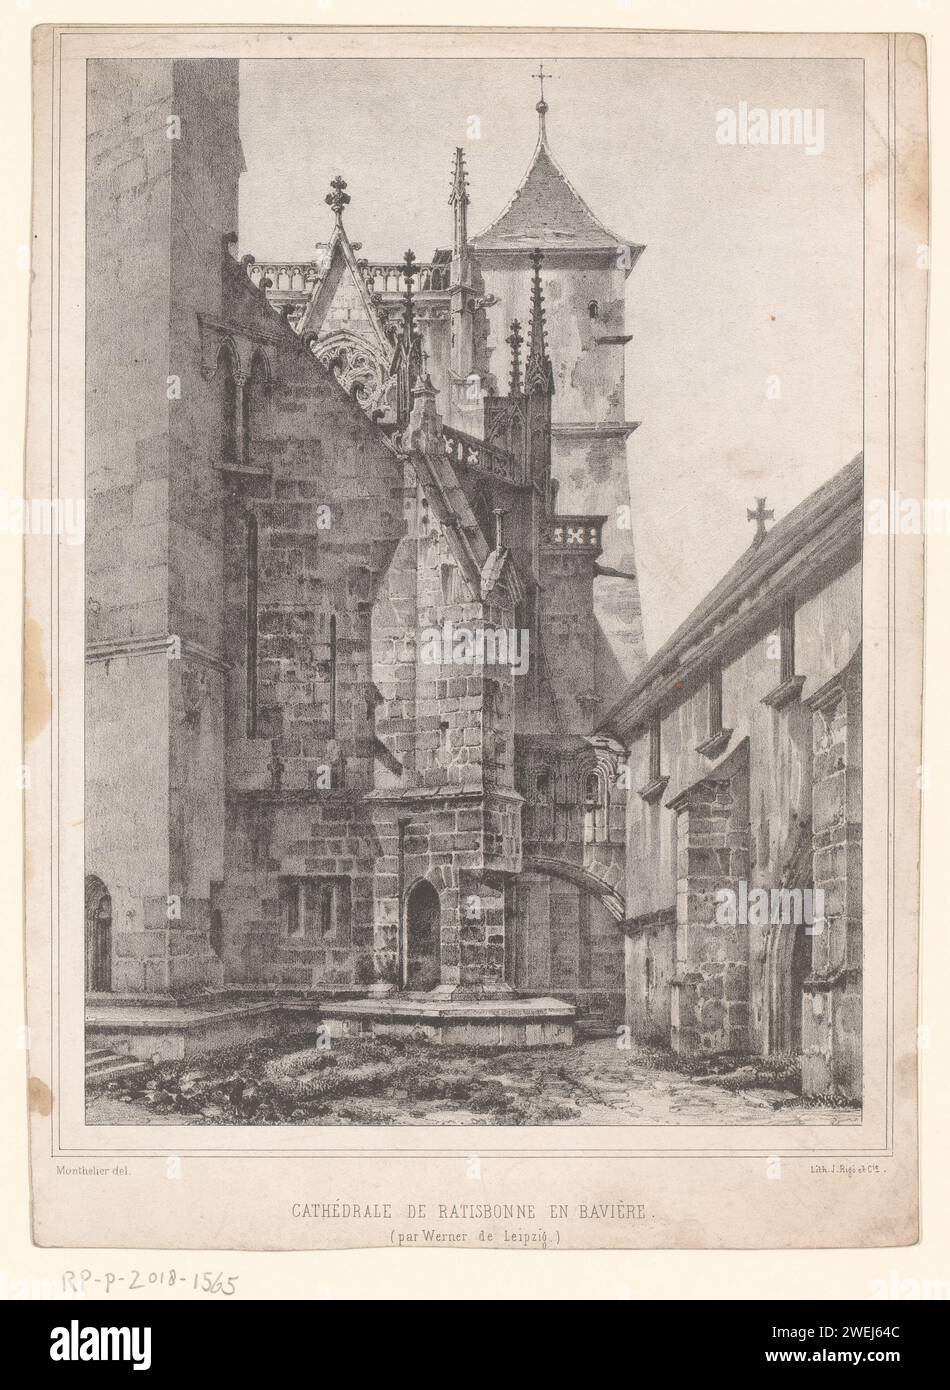 Vista del Dom de Ratisbona, Alexandre Jules Monthelier, 1800 - 1850 interior de papel de impresión de la iglesia Dom es Ratisbona Foto de stock